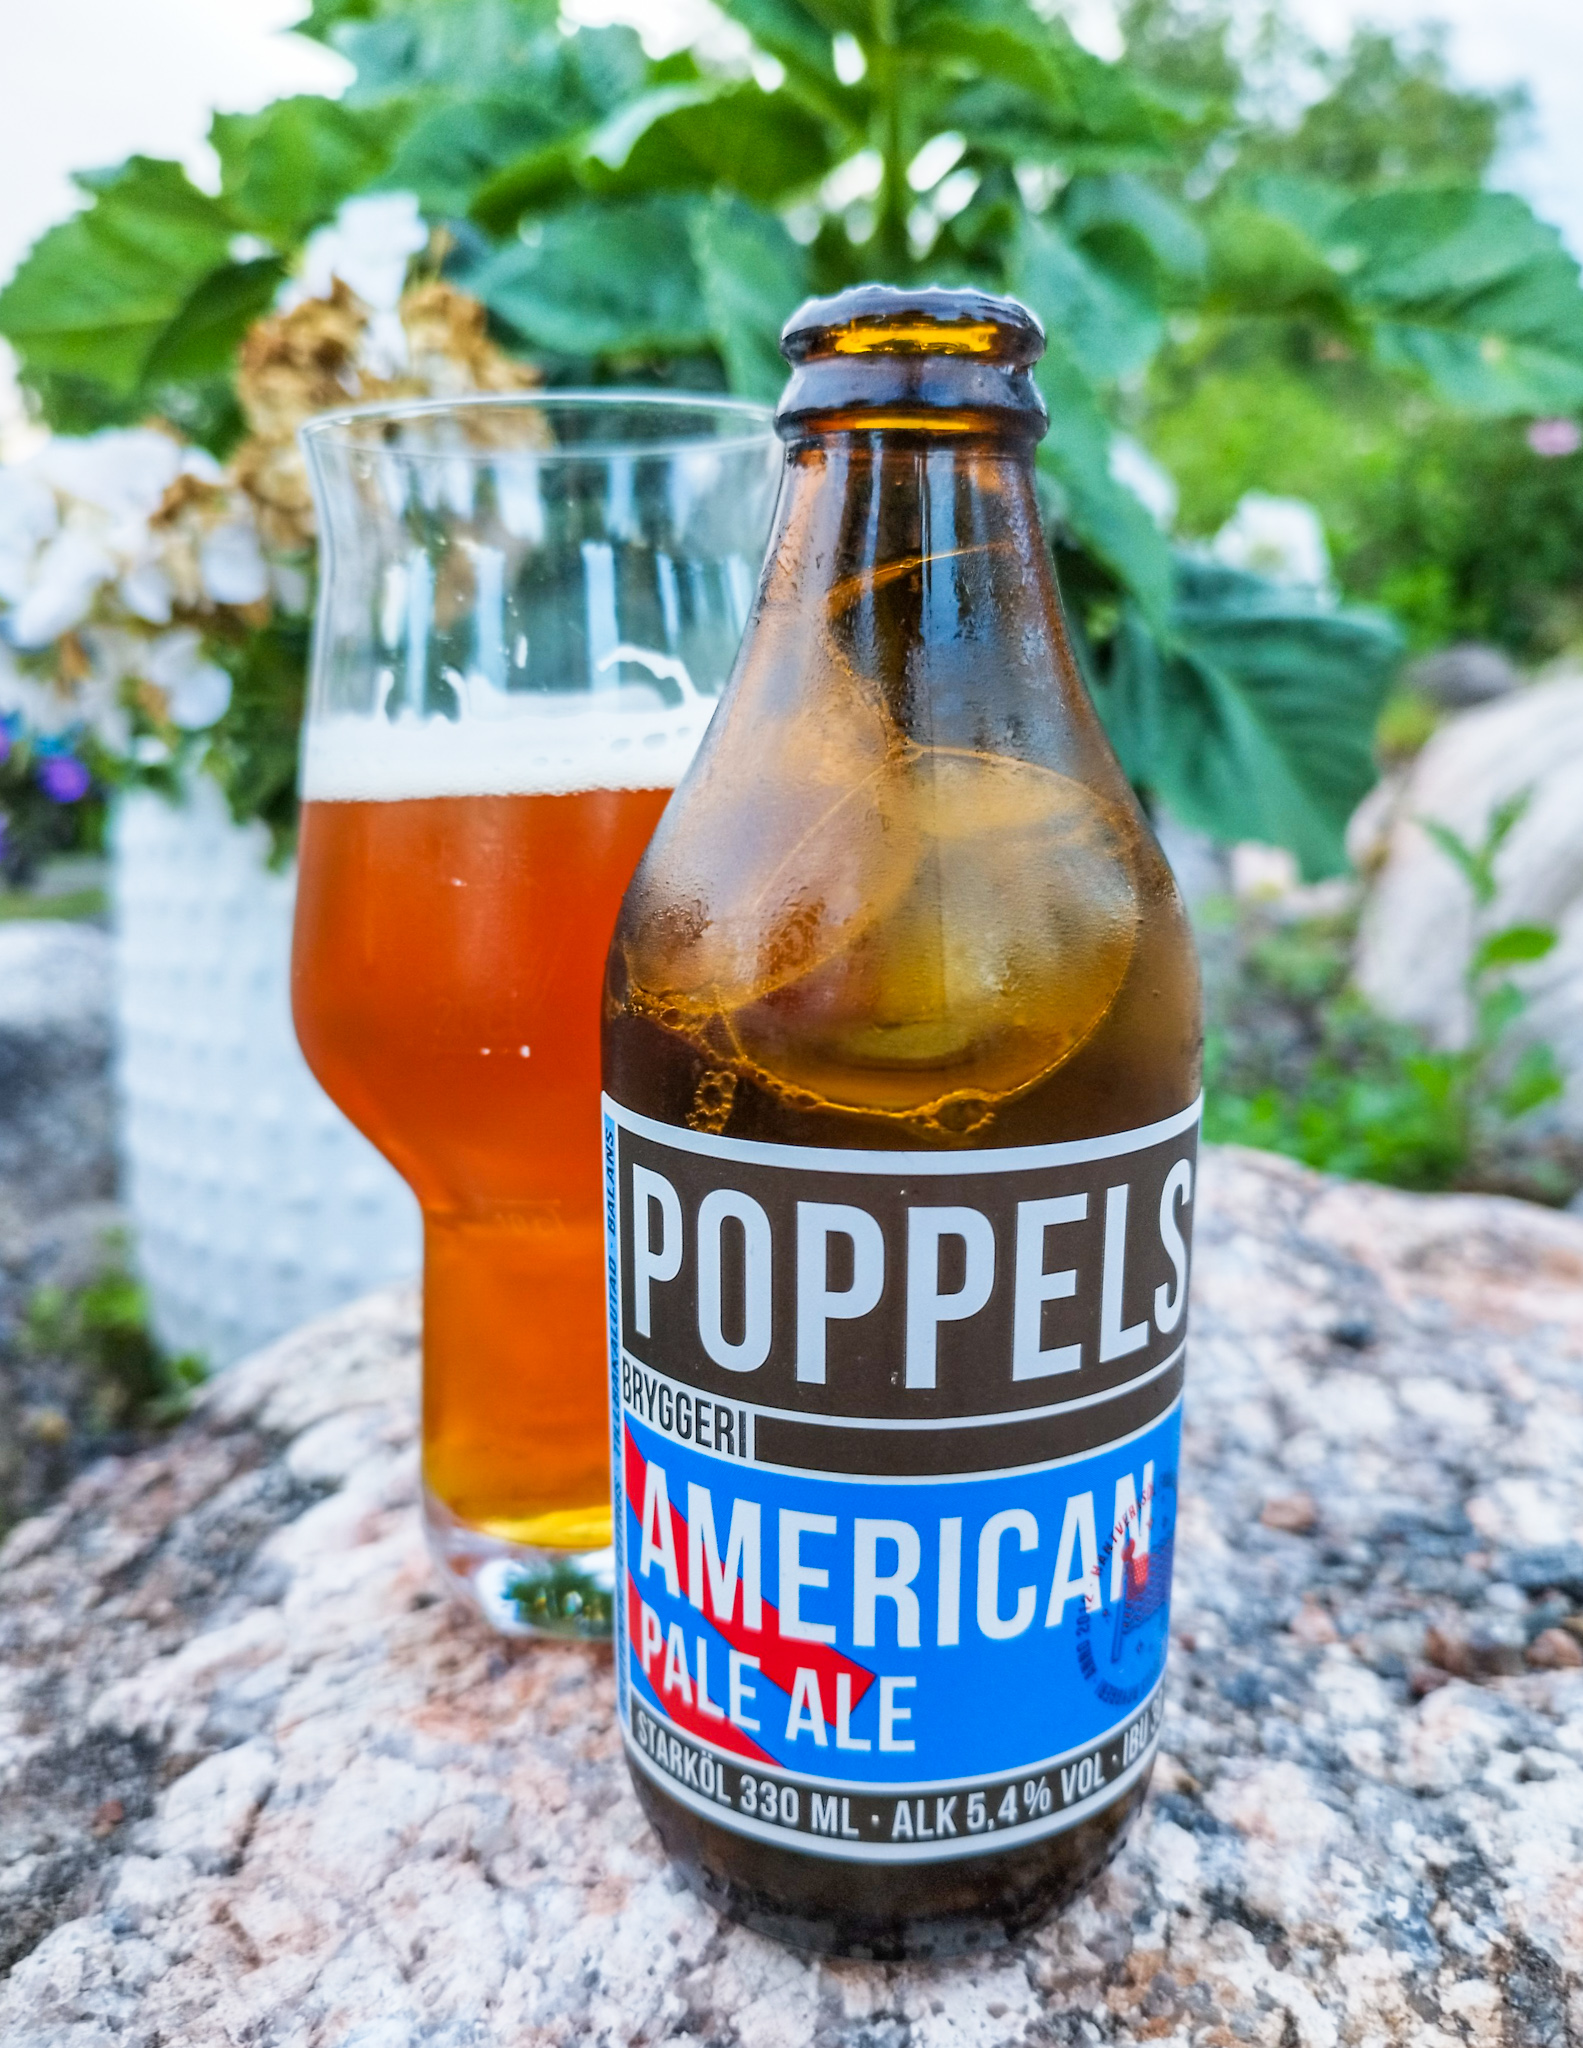 Poppels - American Pale Ale | Craft beer in Sweden: Poppels Bryggeri | Craft Beer Nomads